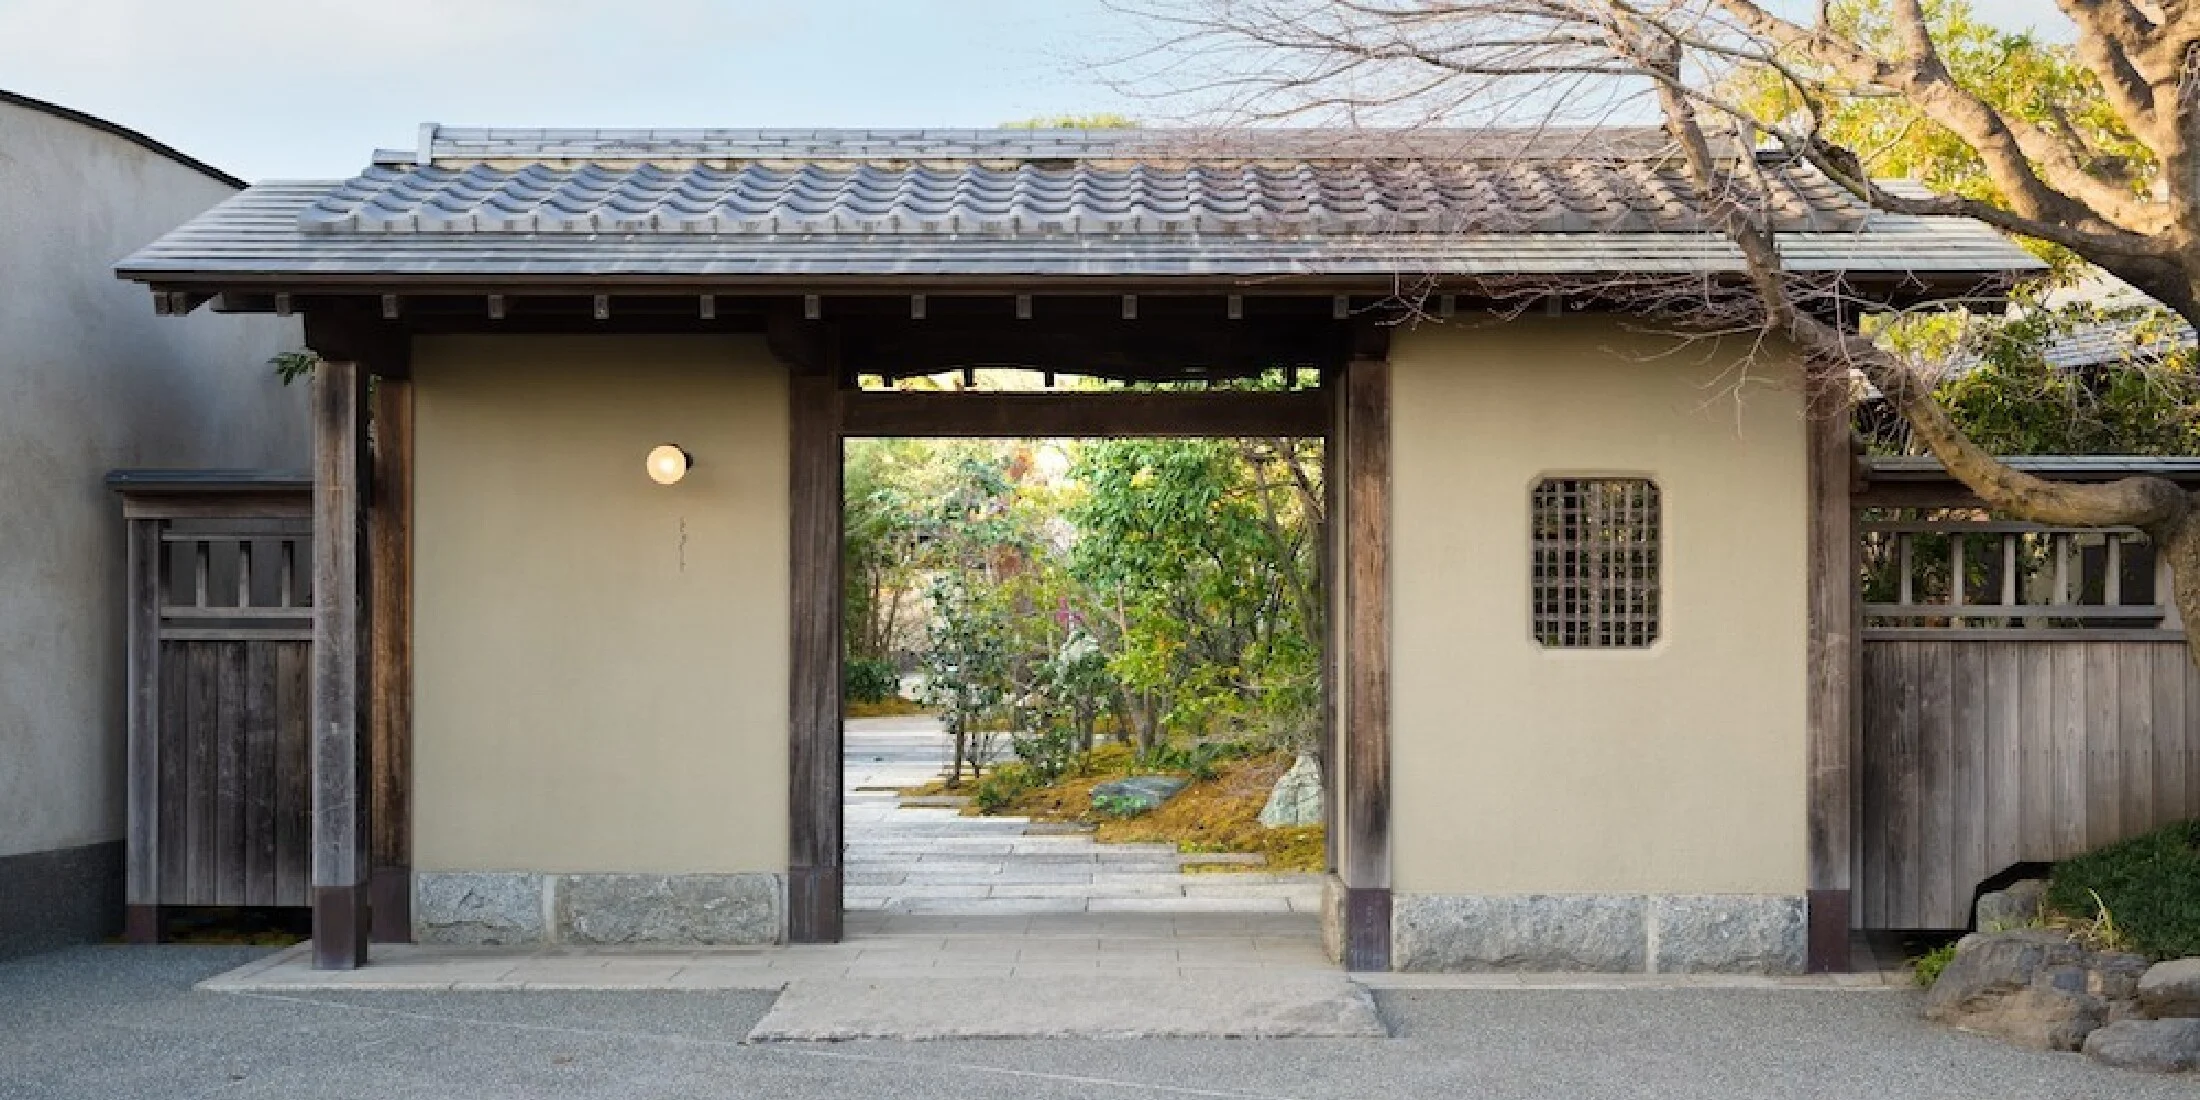 老舗料亭の歴史的建物と庭園が心身を癒すオーベルジュに。「Auberge TOKITO」、東京・立川にオープン